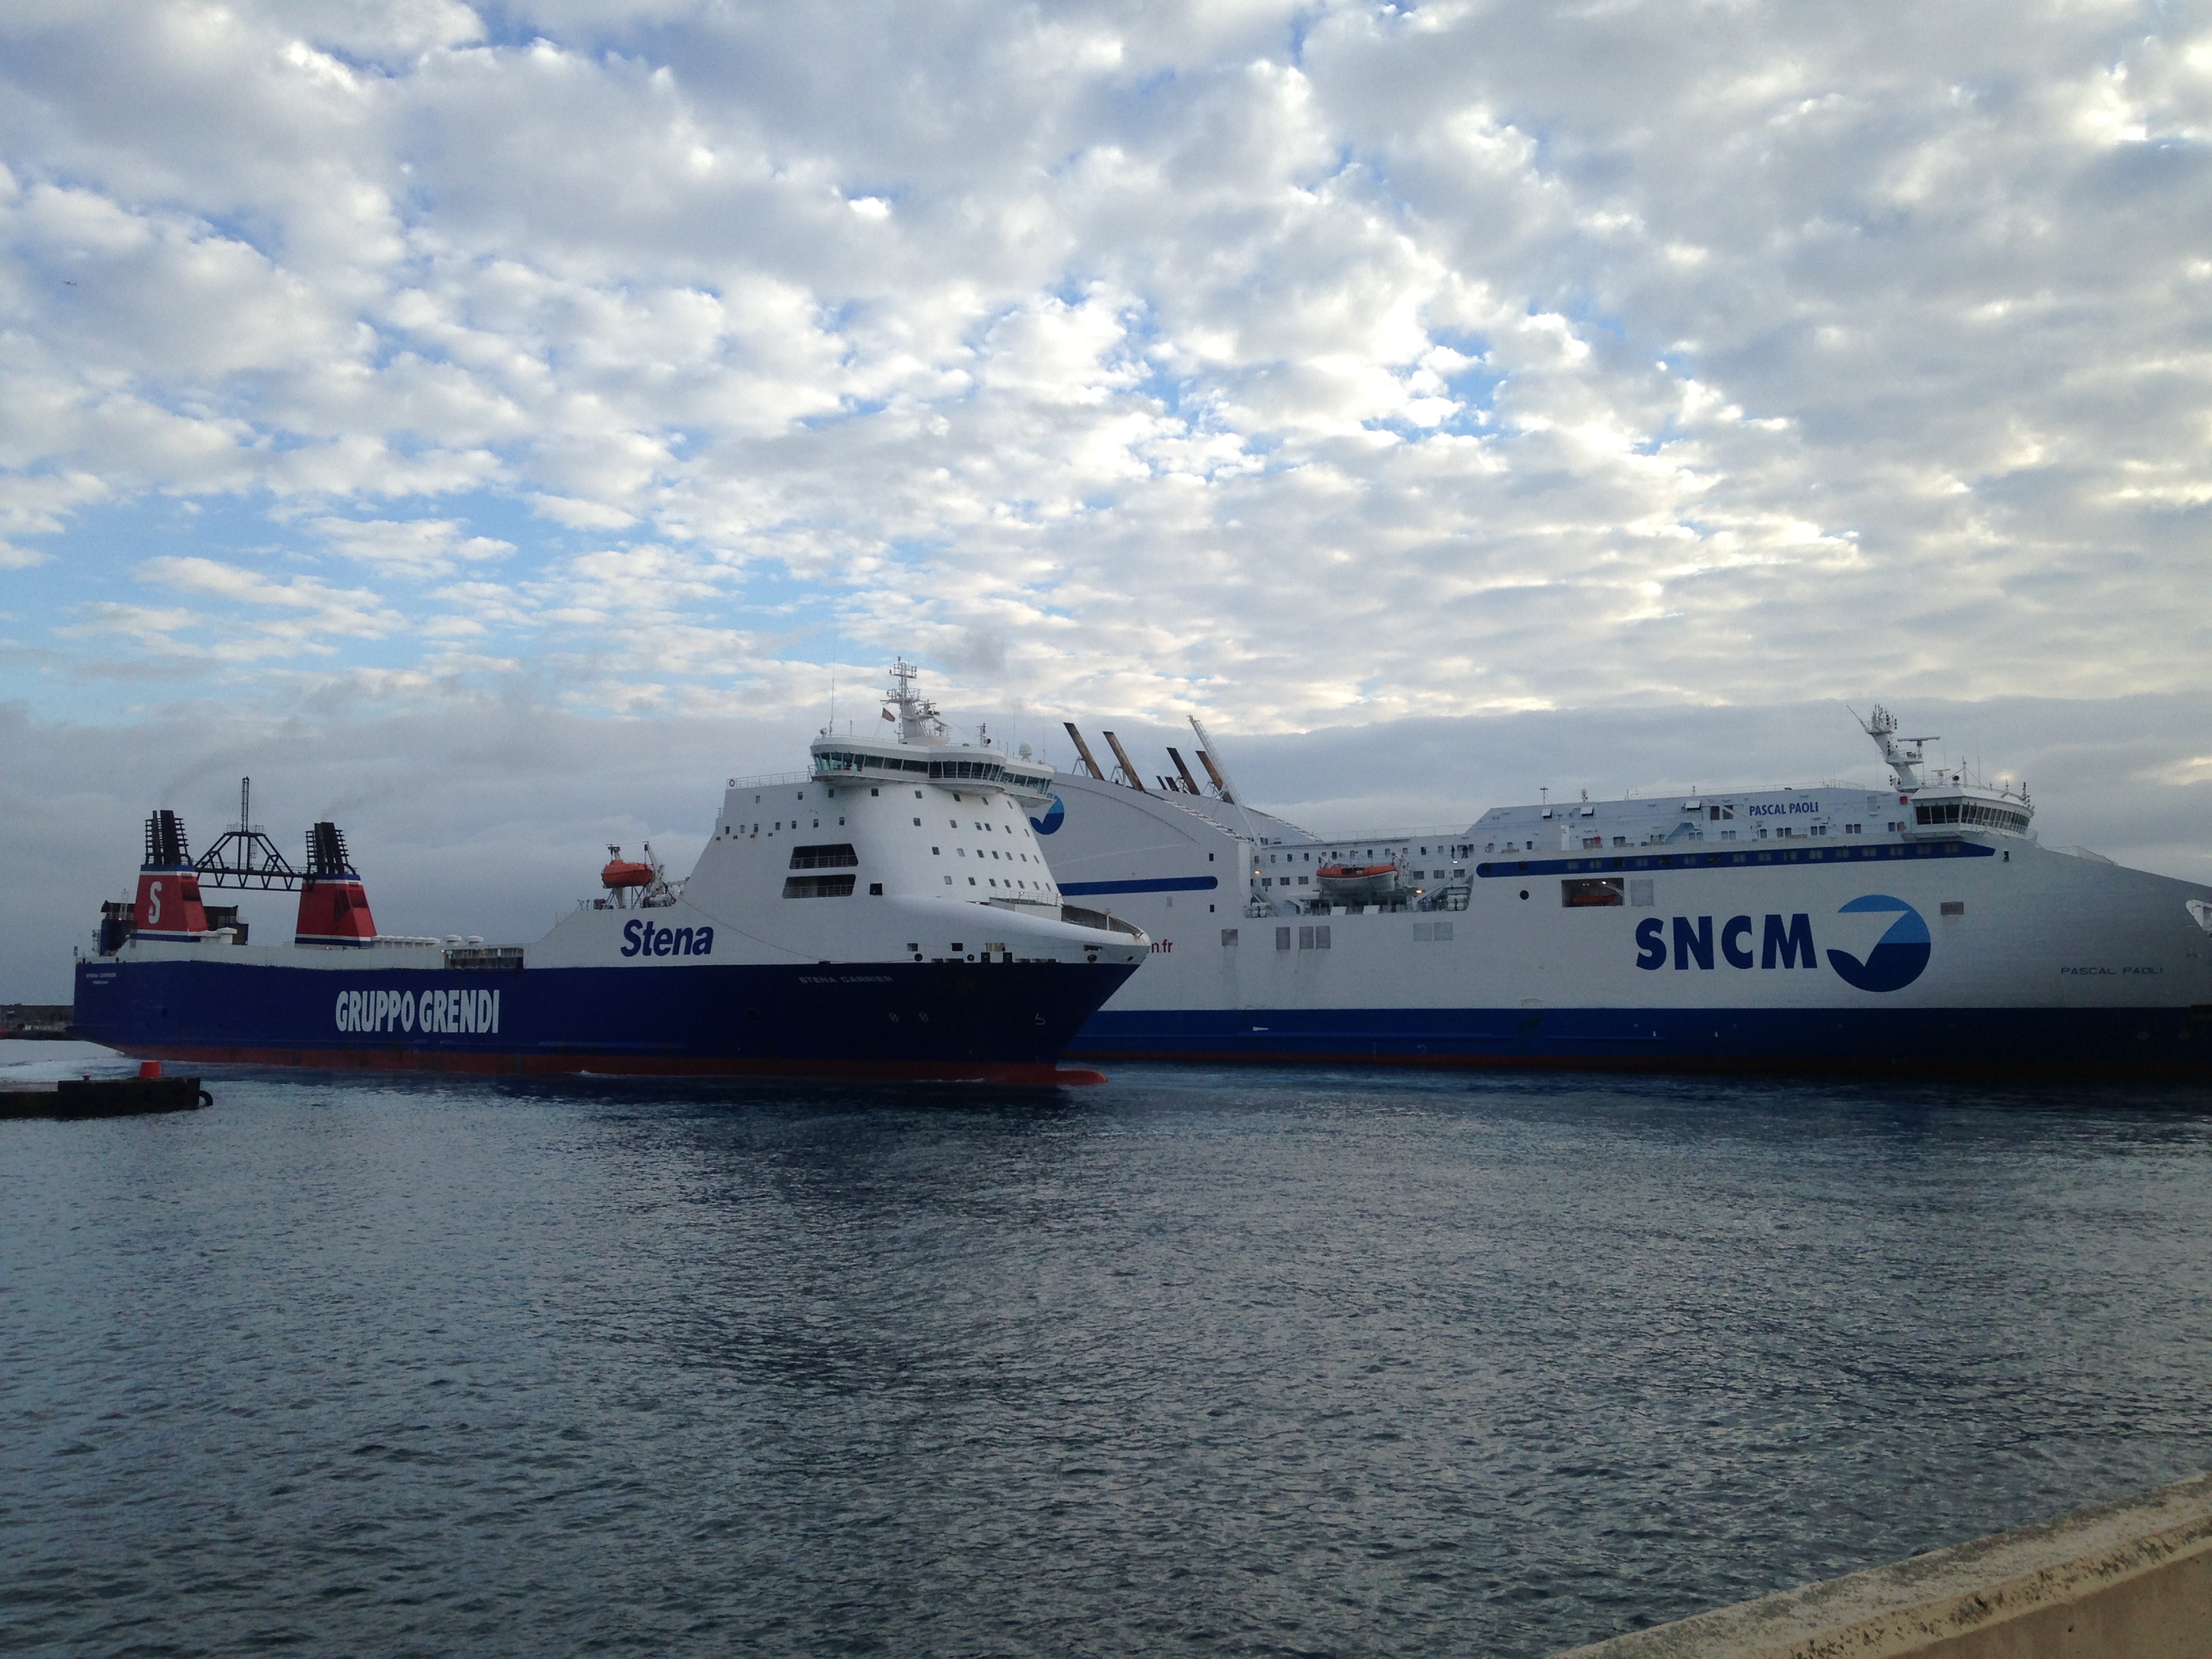 Le "Stena Carrier", le cargo qui fait polémique, est arrivé à Bastia